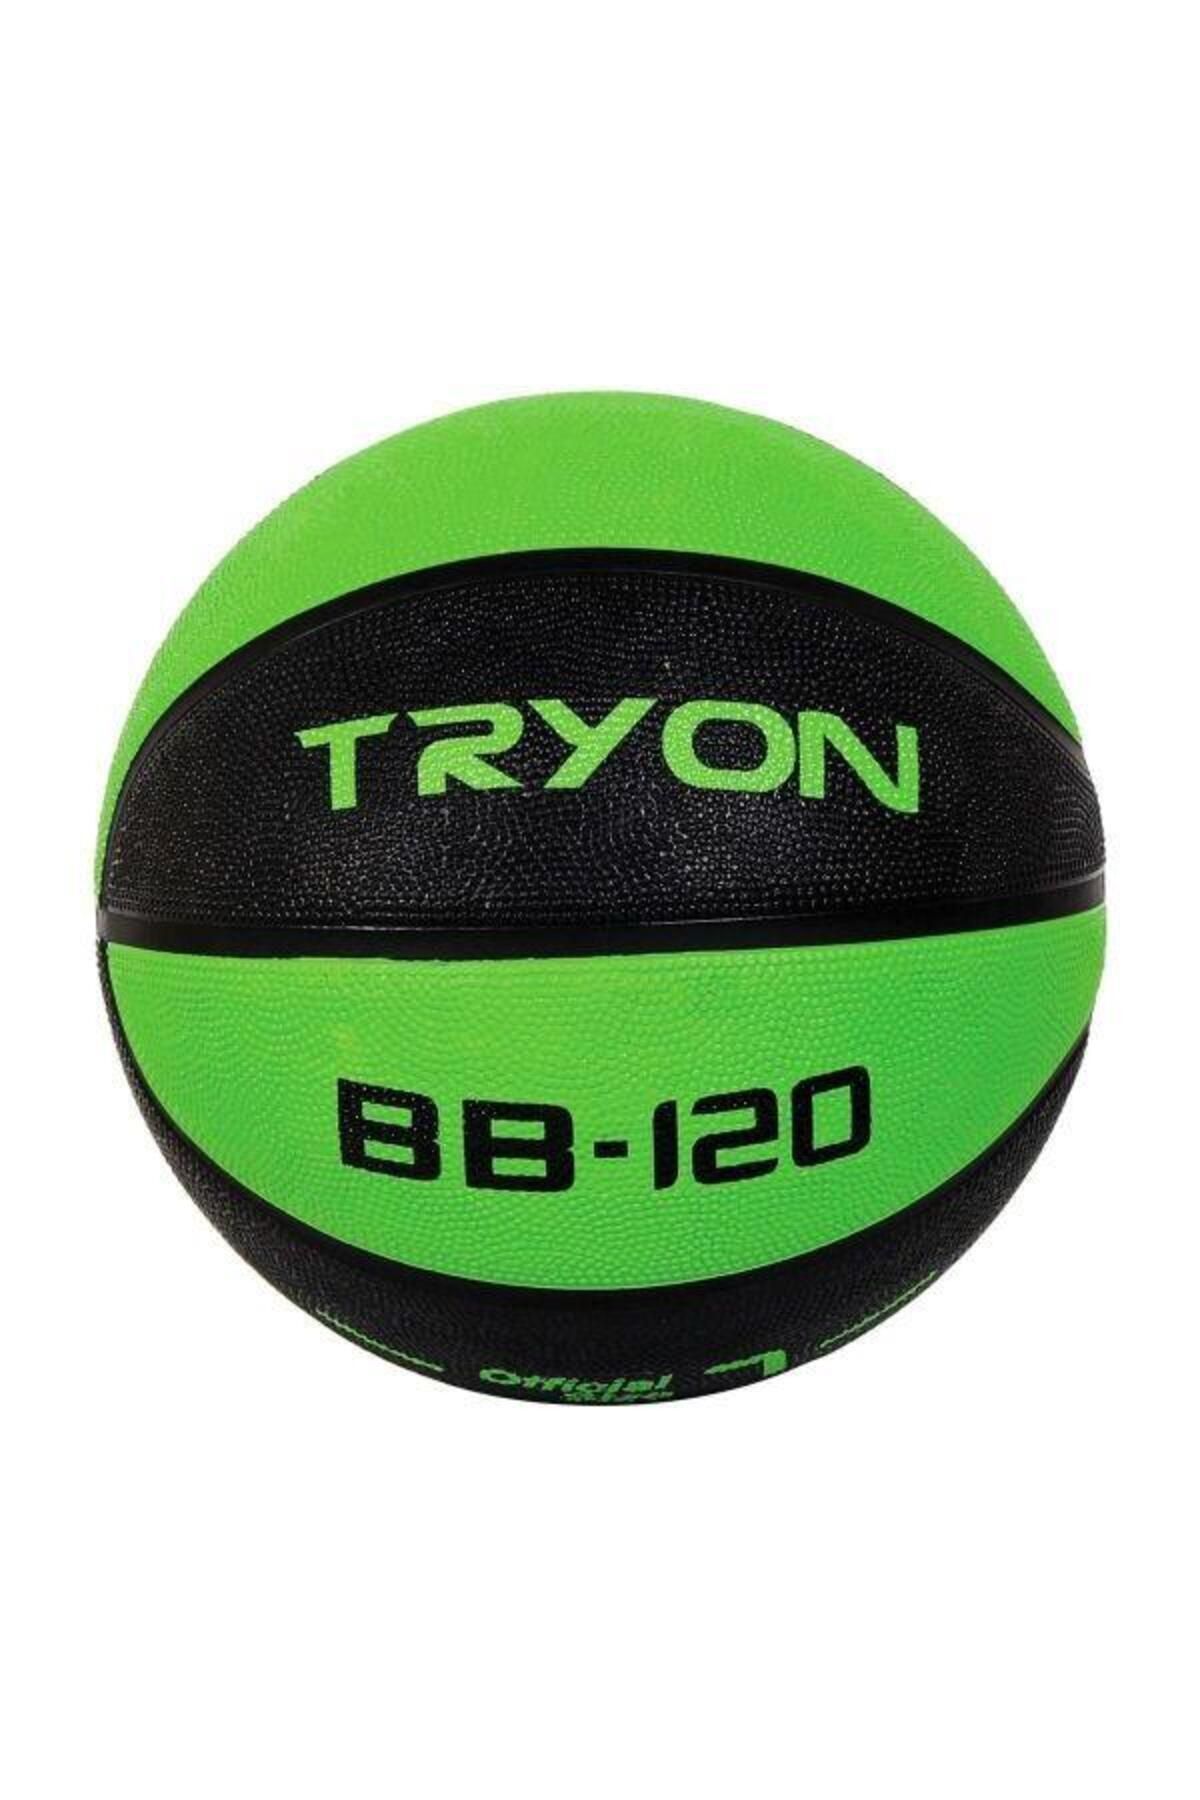 TRYON BB-120-YSL 7 Numara Basketbol Topu